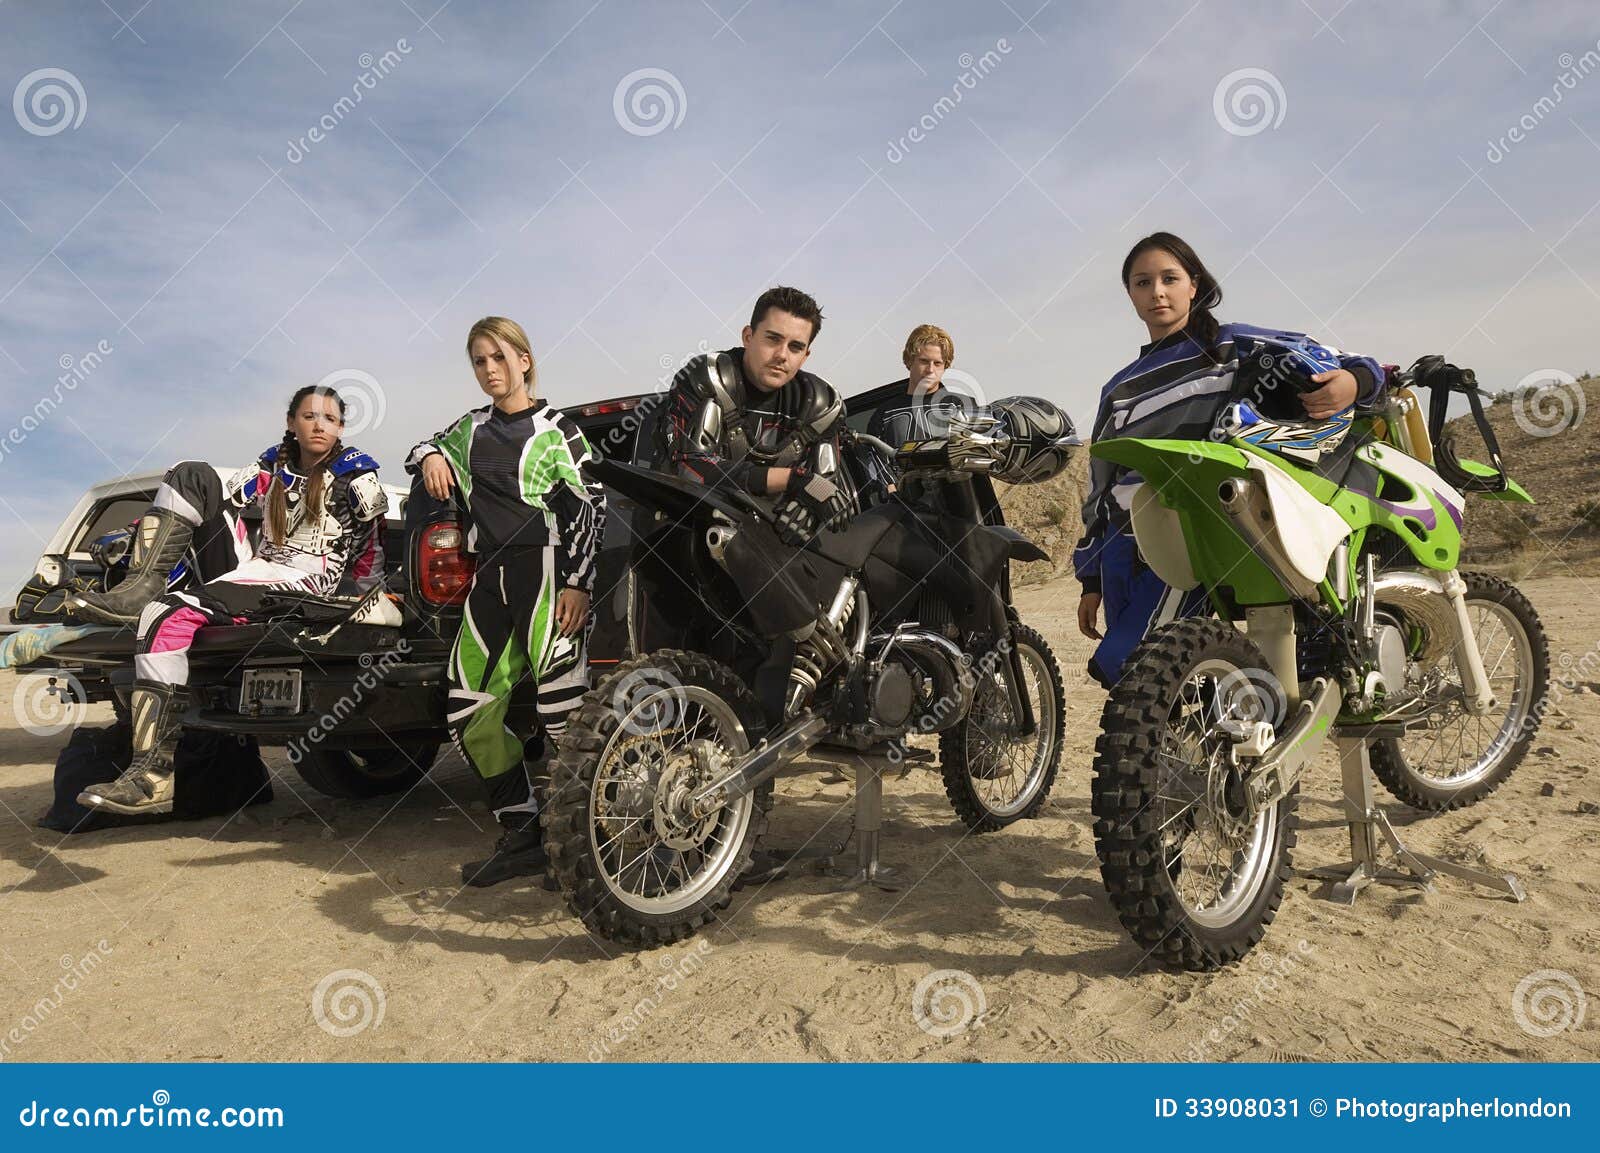 Δρομείς μοτοκρός με τις μοτοσικλέτες και ανοιχτό φορτηγό στην έρημο. Πορτρέτο των βέβαιων δρομέων μοτοκρός με τις μοτοσικλέτες και του ανοιχτού φορτηγού στην έρημο